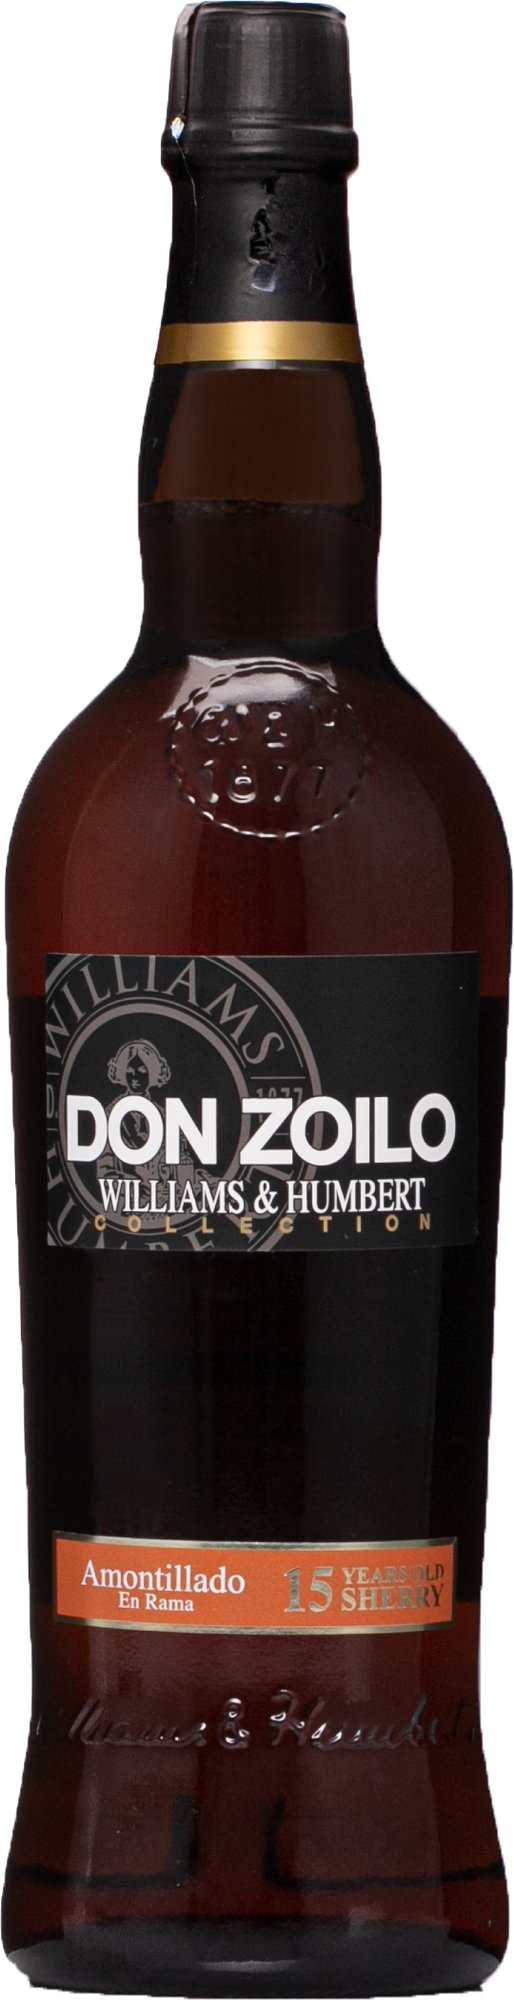 Don Zoilo Amontillado 15 leté sherry 19% 0,75l